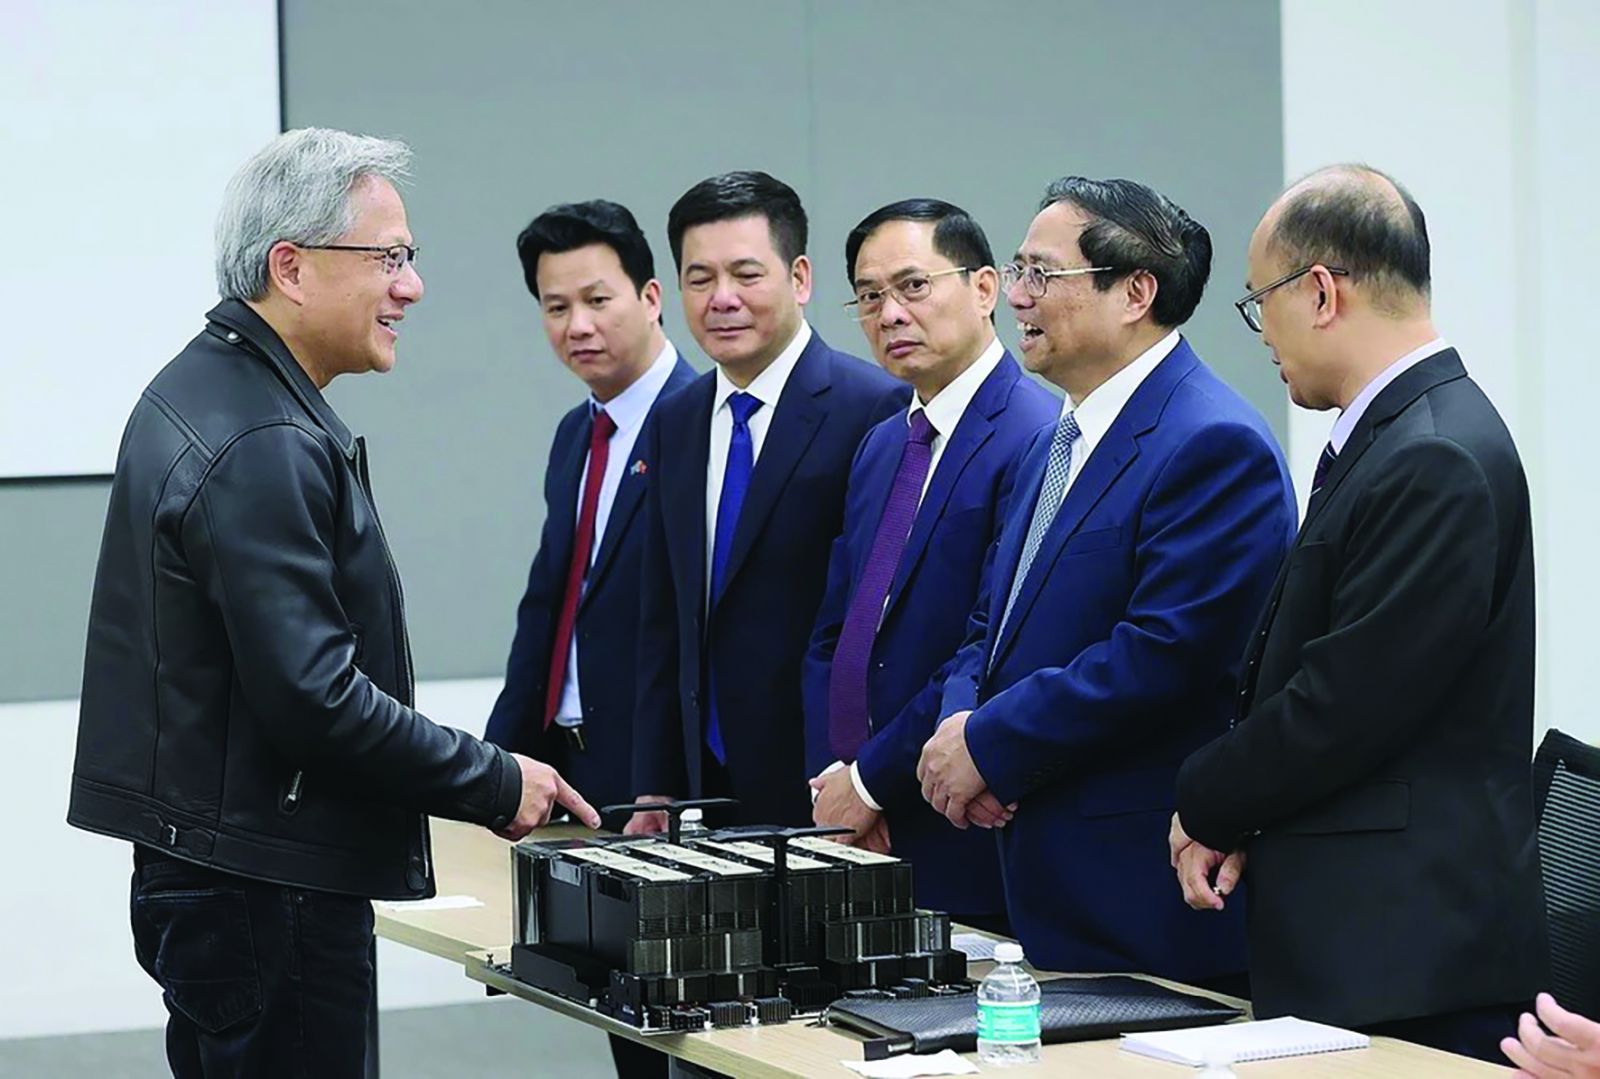  Chủ tịch Nvidia Jensen Huang giới thiệu với Thủ tướng Phạm Minh Chính về chip A100 dựa trên AI của Nvidia. Ảnh: Dương Giang